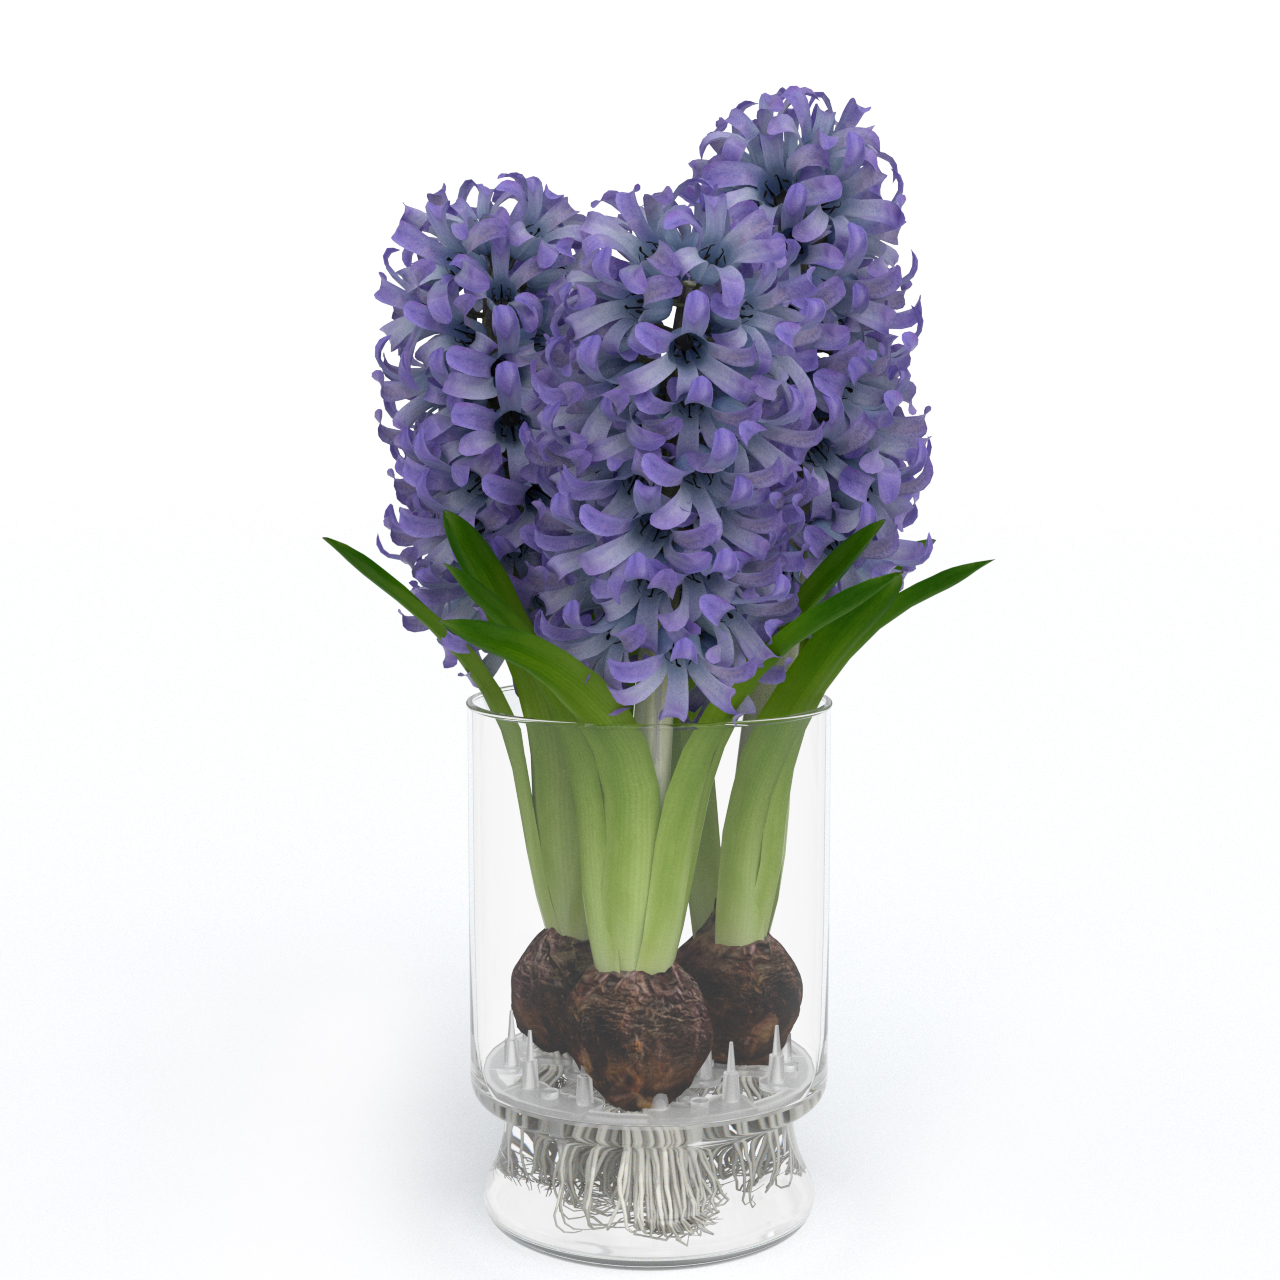 Hyacinth-hydroponic.jpg